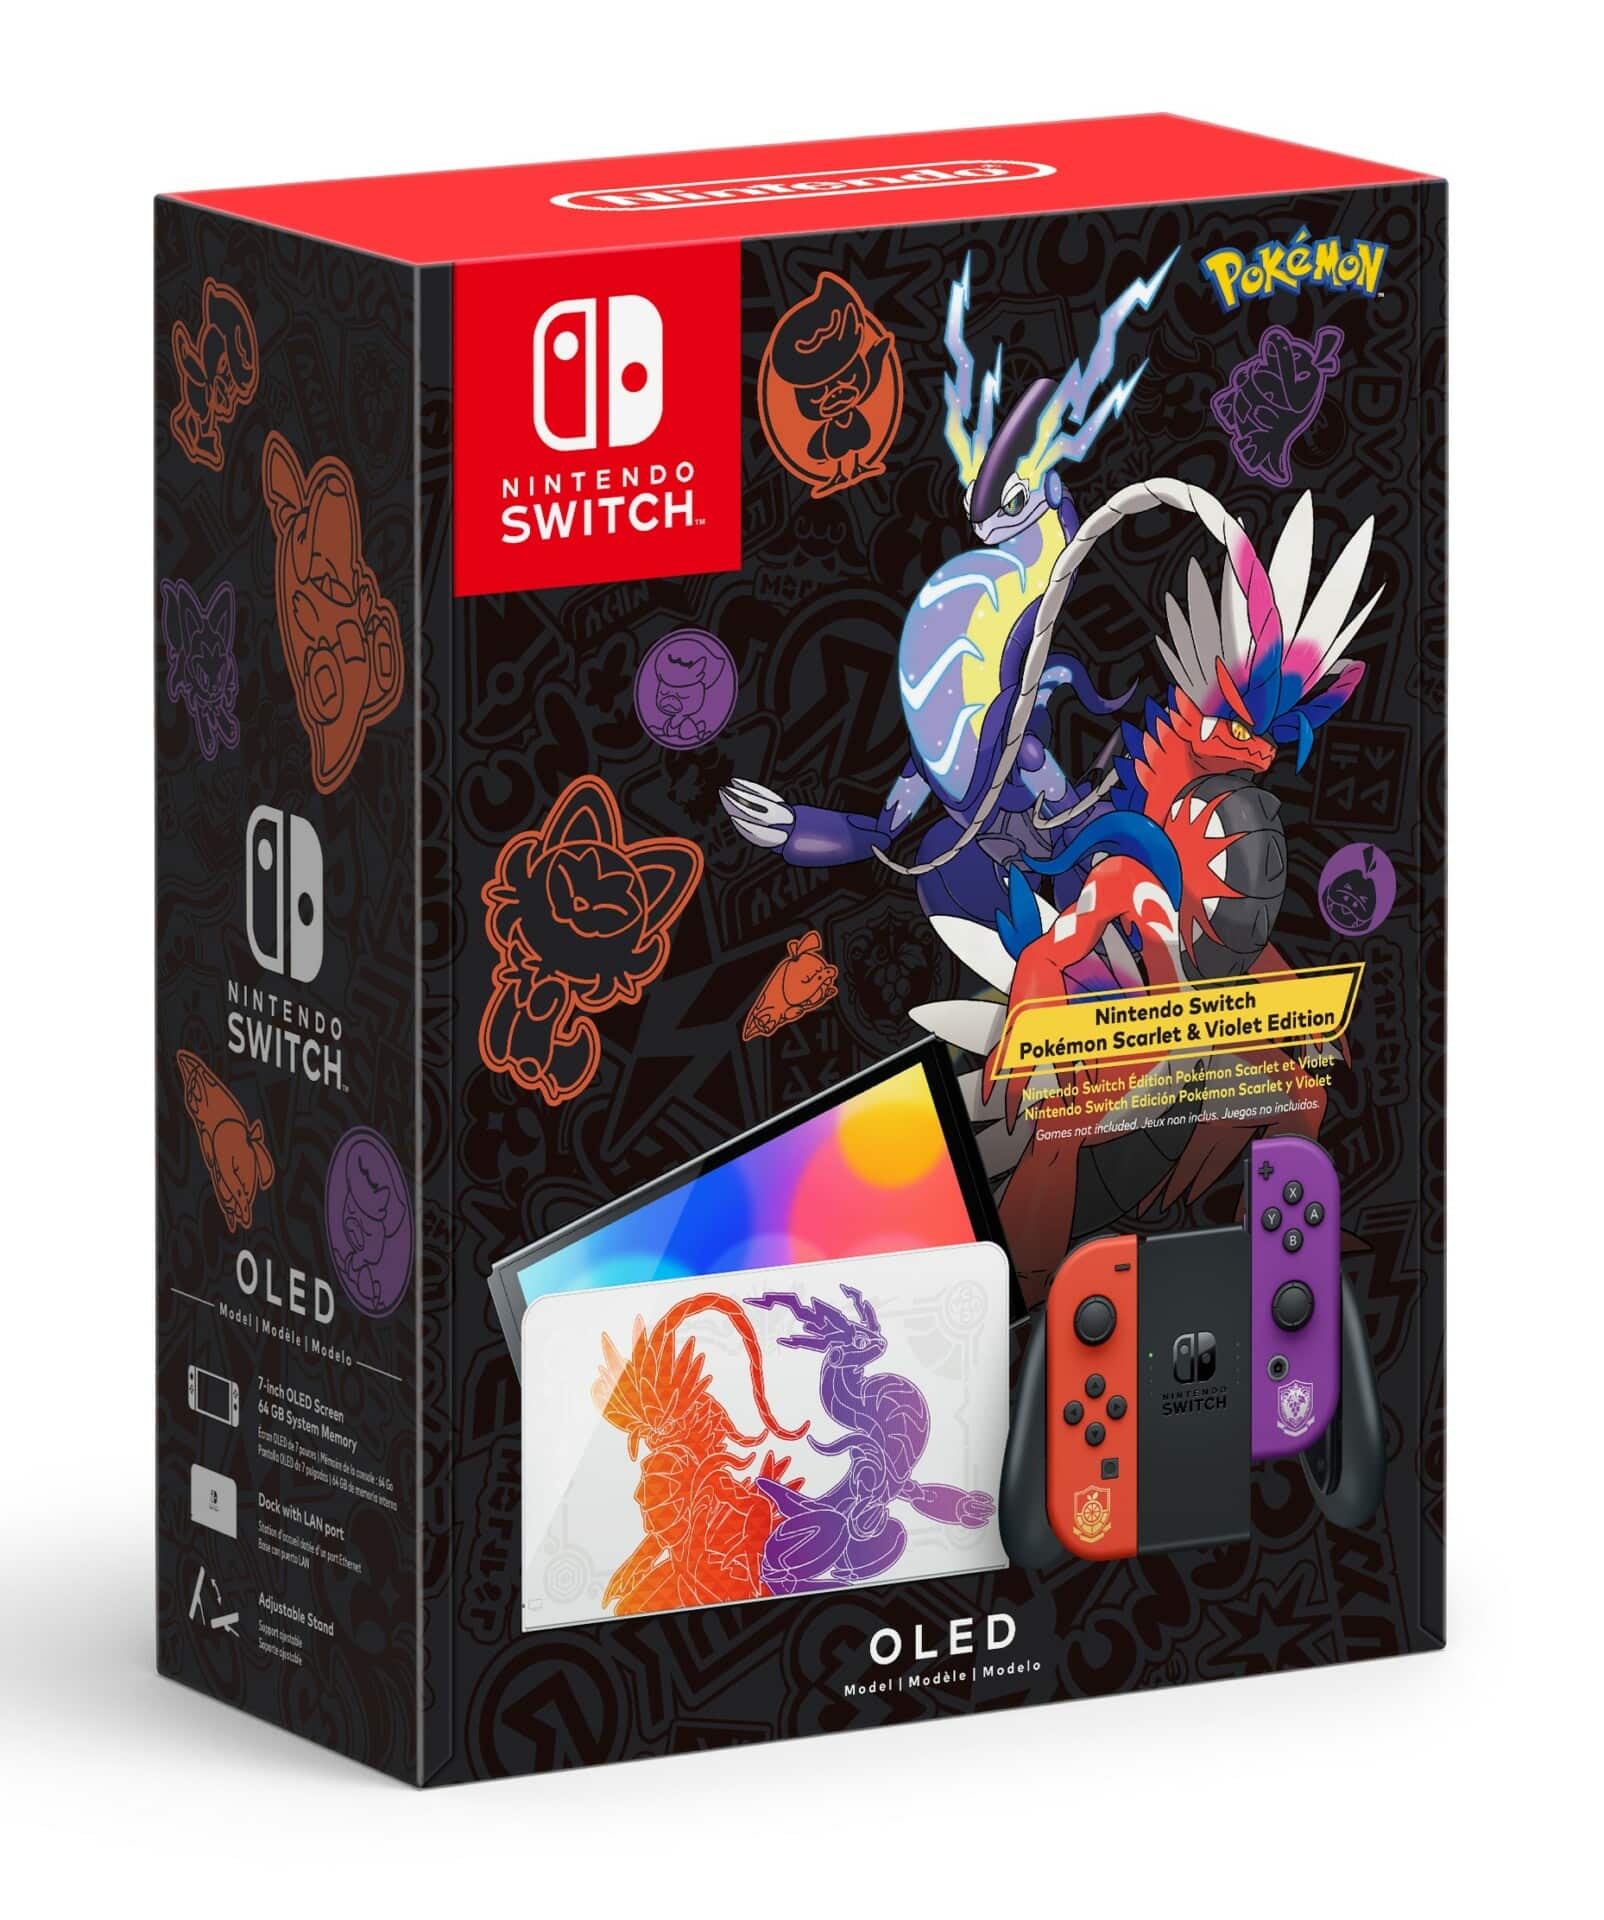 Nintendo Switch OLED Edición Pokémon Escarlata y Violeta fecha de lanzamiento precio 4 de noviembre $359.99